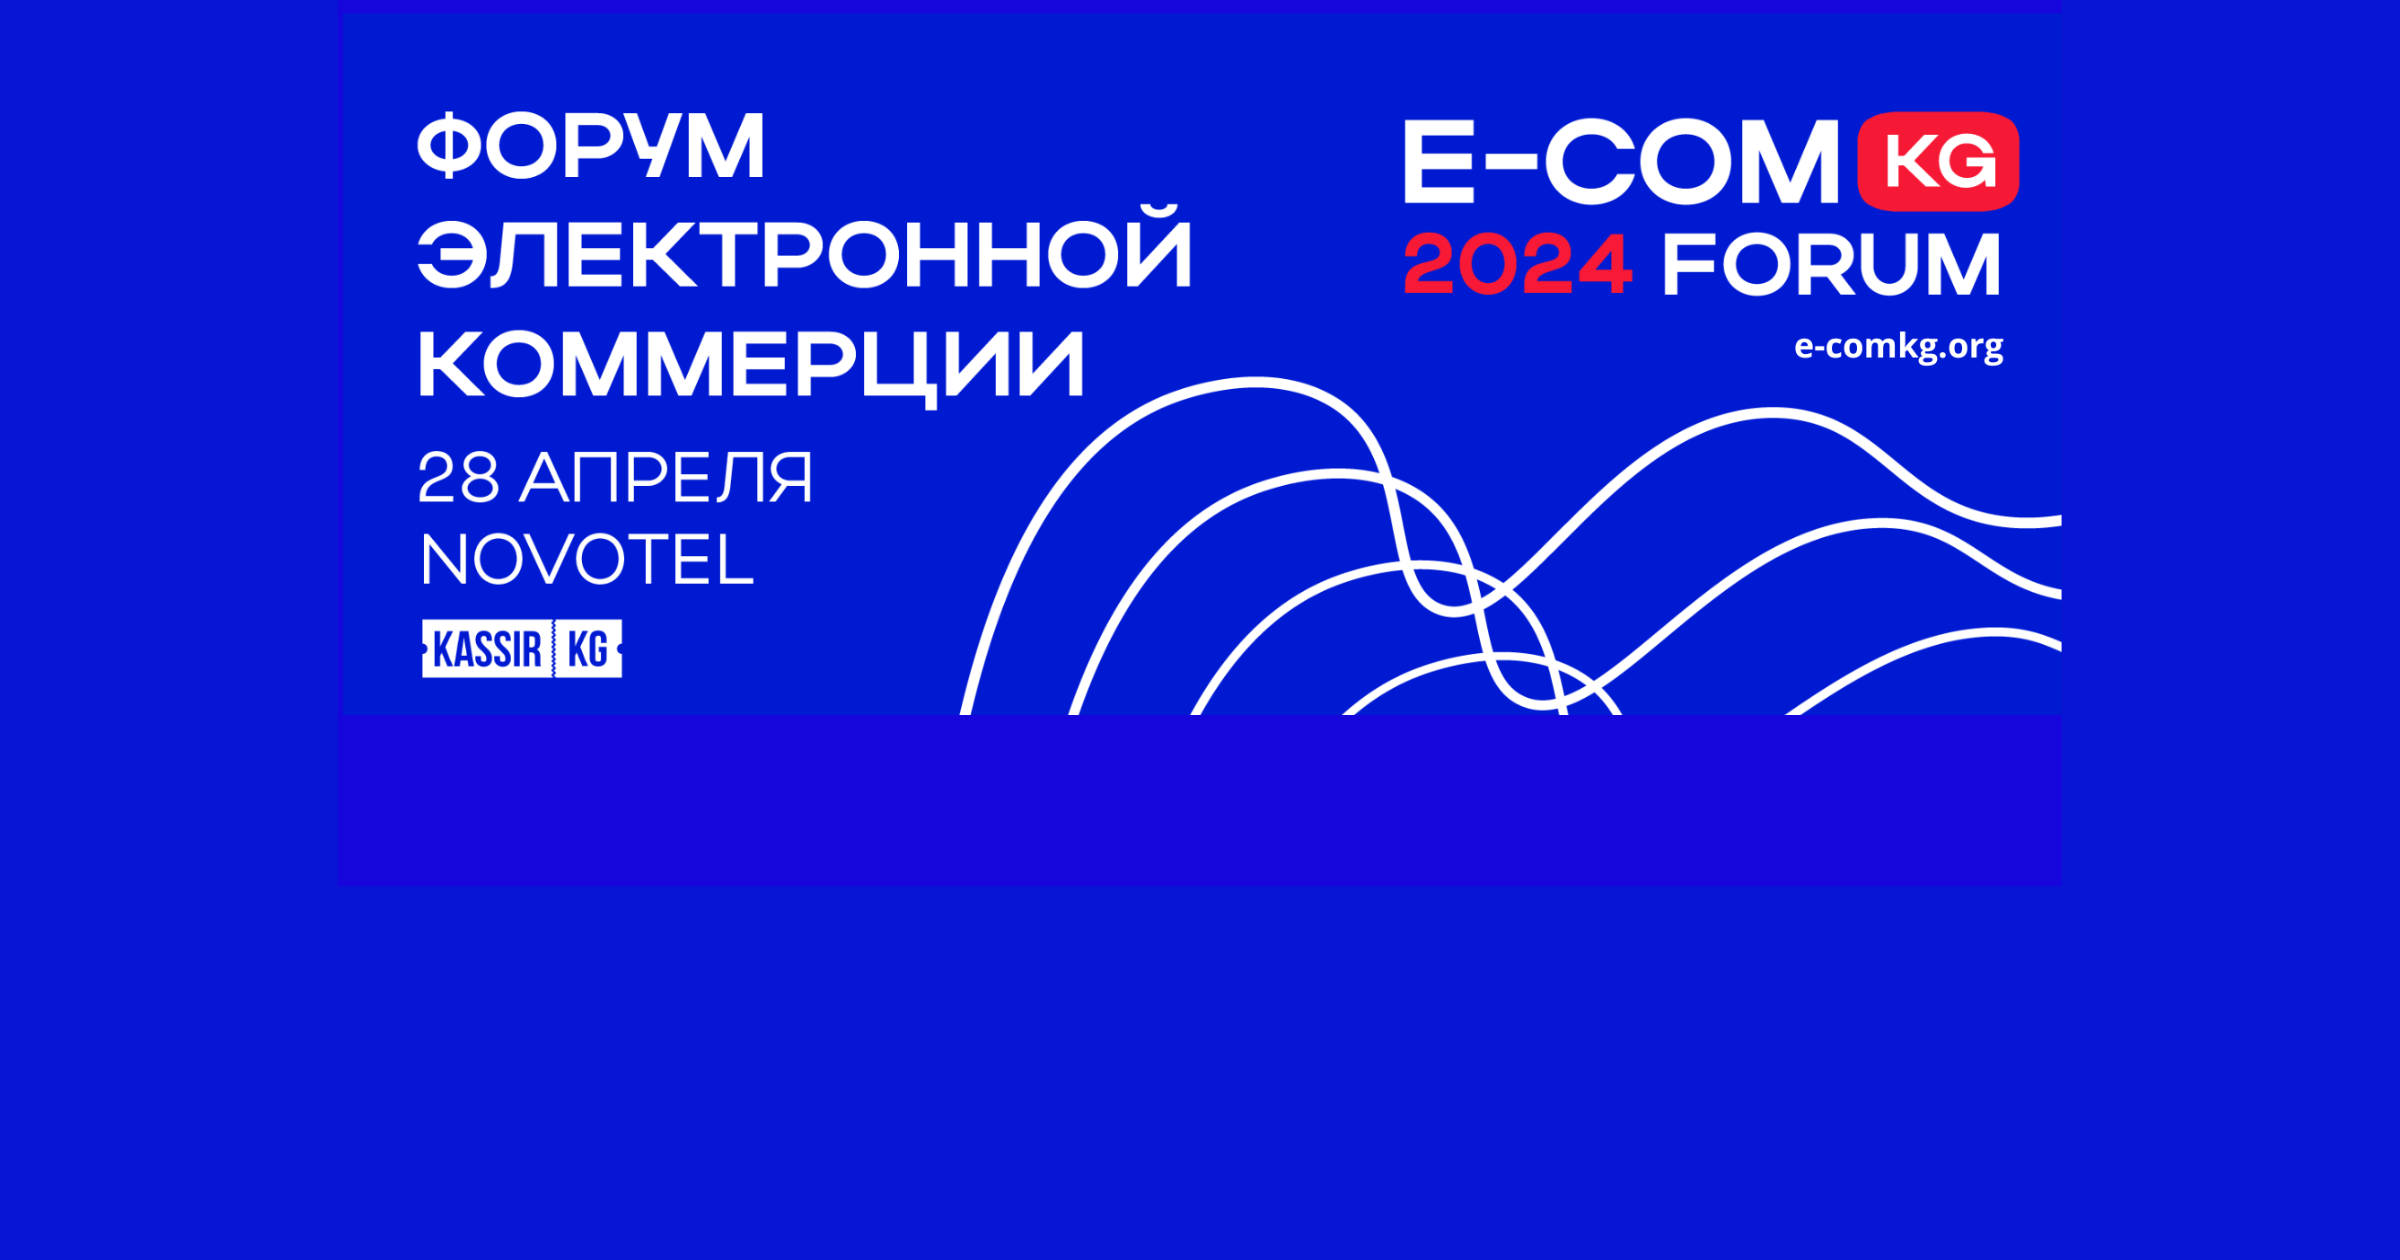 В Бишкеке пройдет форум E-COMKG-24 по трендам, инсайдам и новым возможностям на маркетплейсах